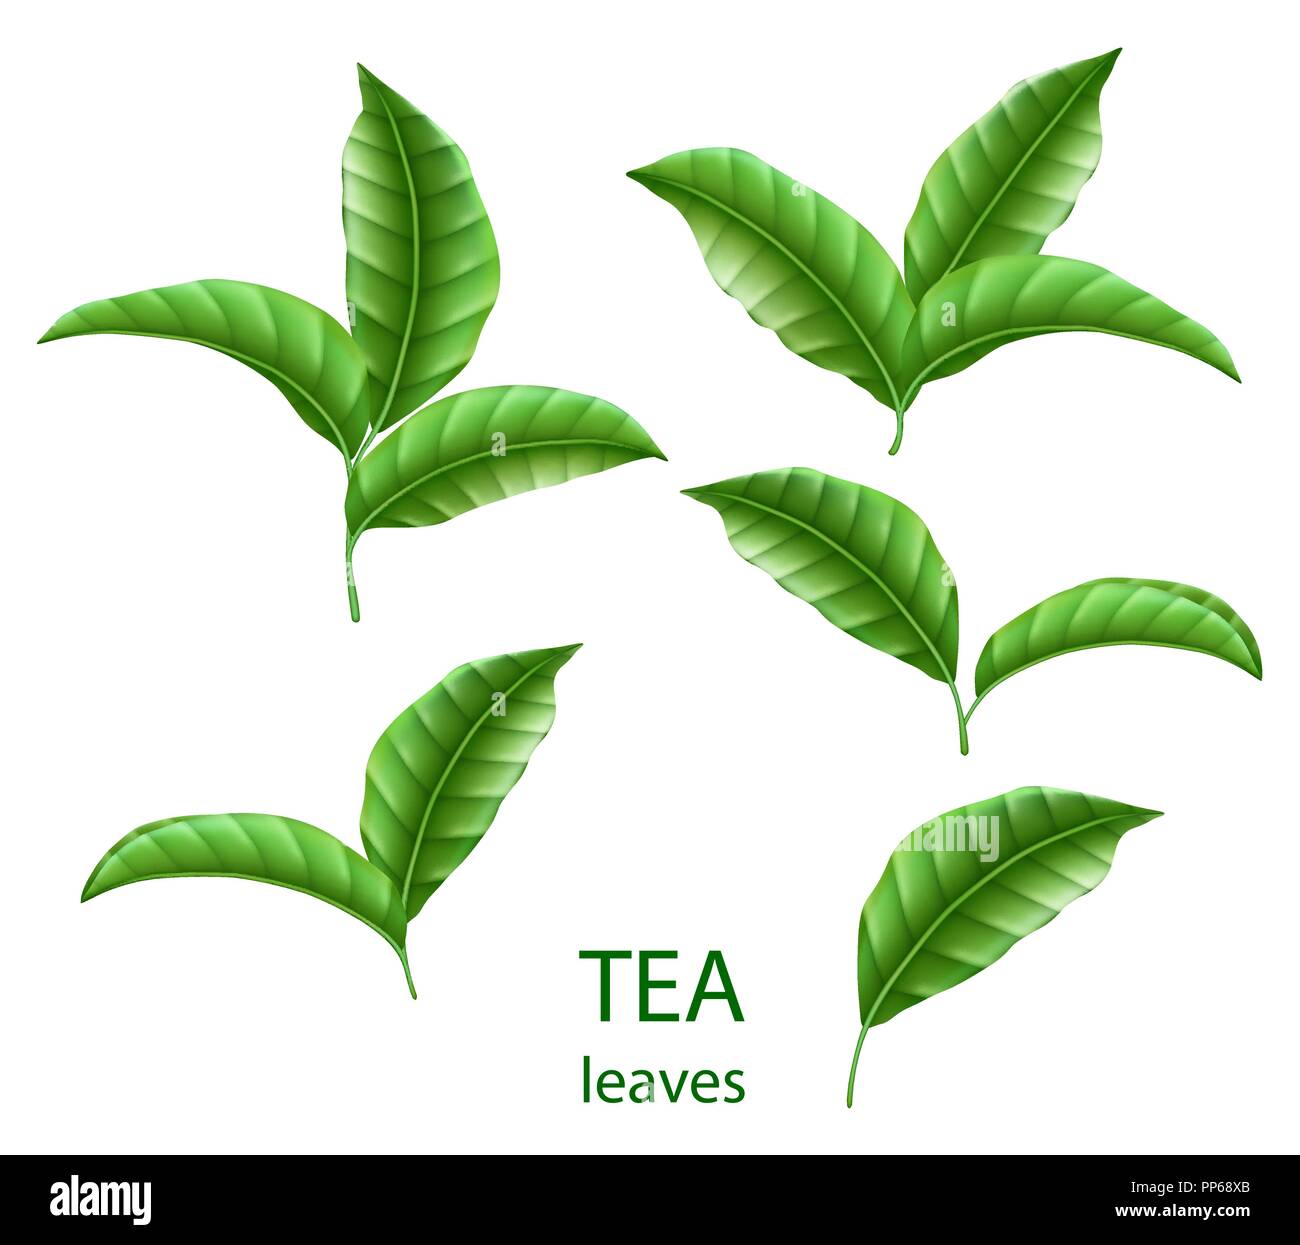 Festlegen von realistischen grüne Teeblätter isoliert. Grüner Tee für ihr Design, Werbung und Verpackung. Vektor floralen Elementen. Stock Vektor